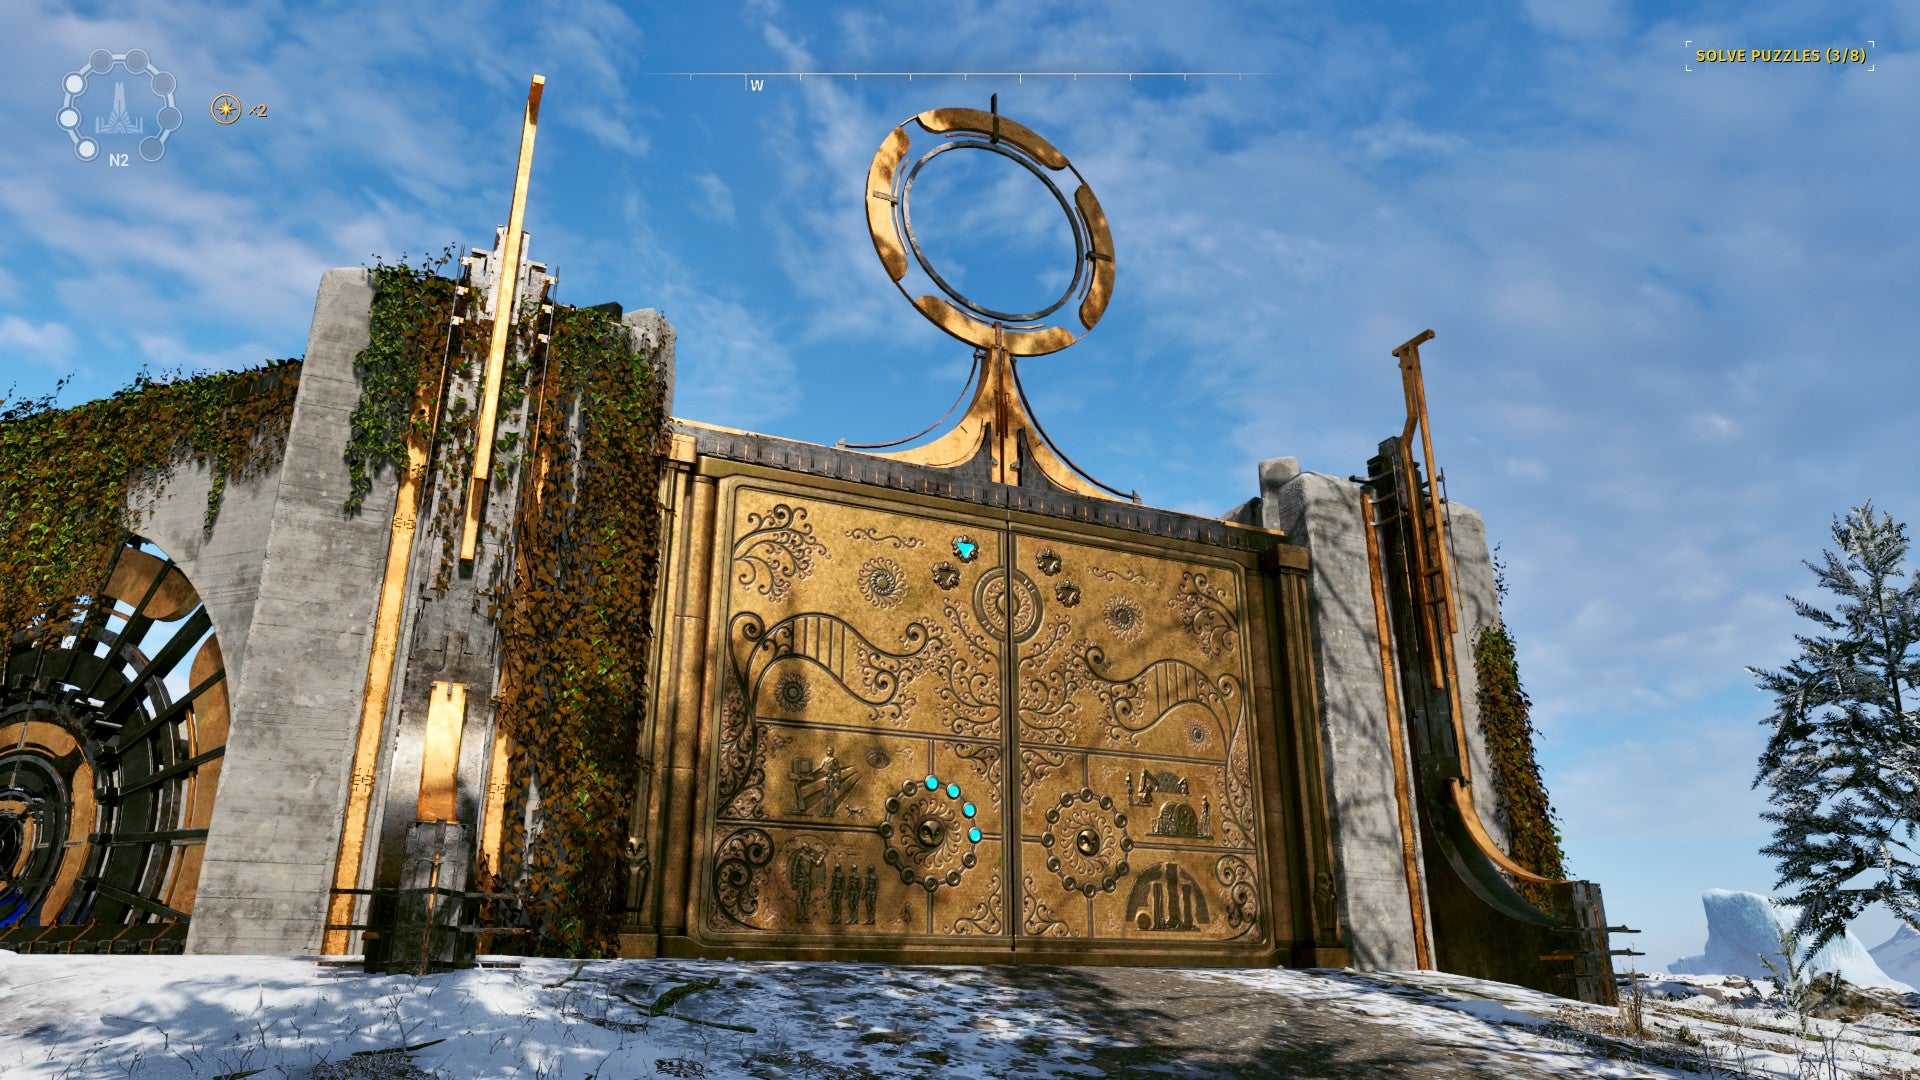 Гигантские золотые ворота с изысканными резьбами, некоторые из которых светятся синим.